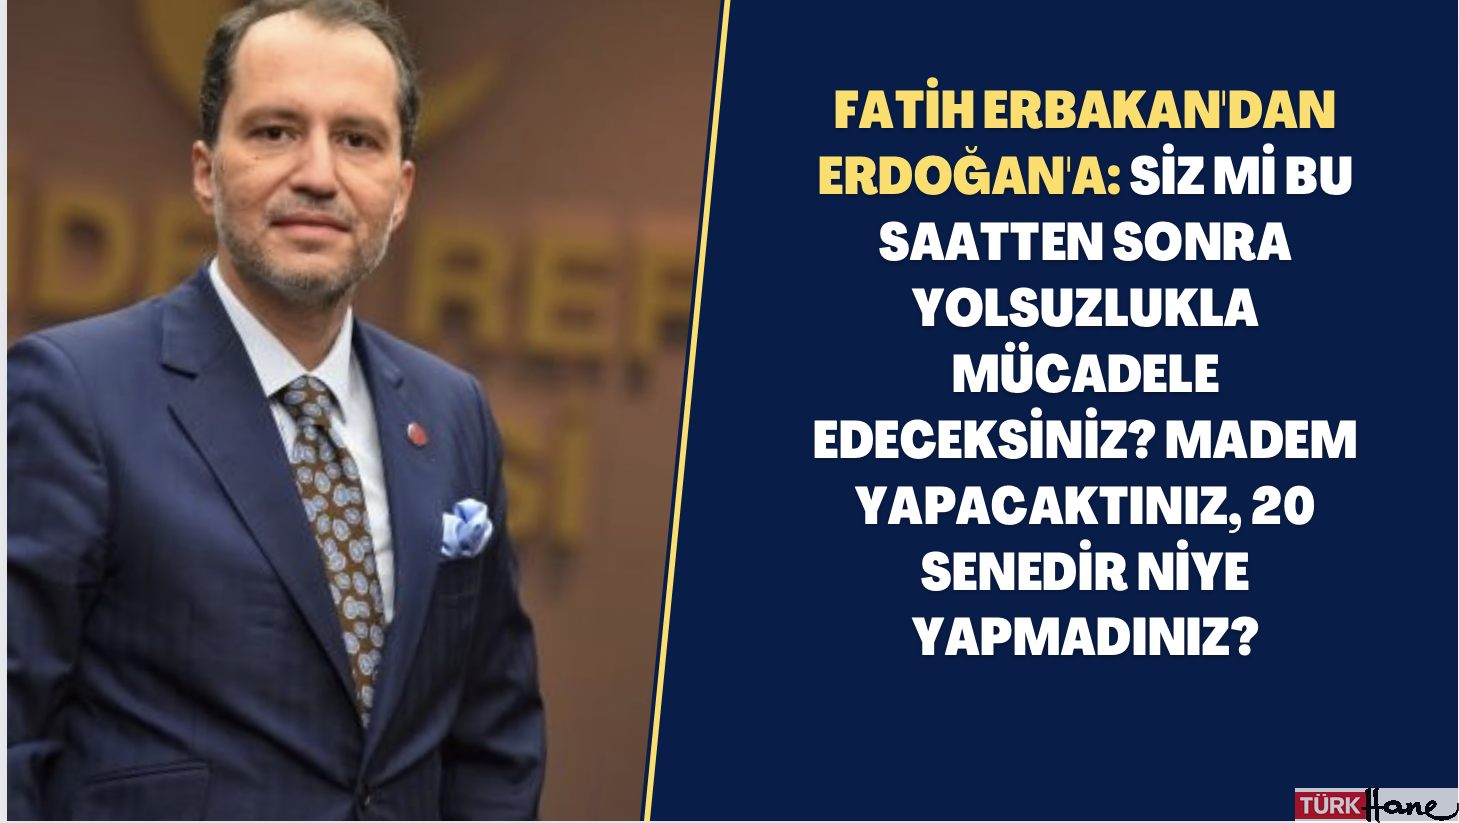 Fatih Erbakan’dan Erdoğan’a: Siz mi bu saatten sonra yolsuzlukla mücadele edeceksiniz? Madem yapacaktınız, 20 se